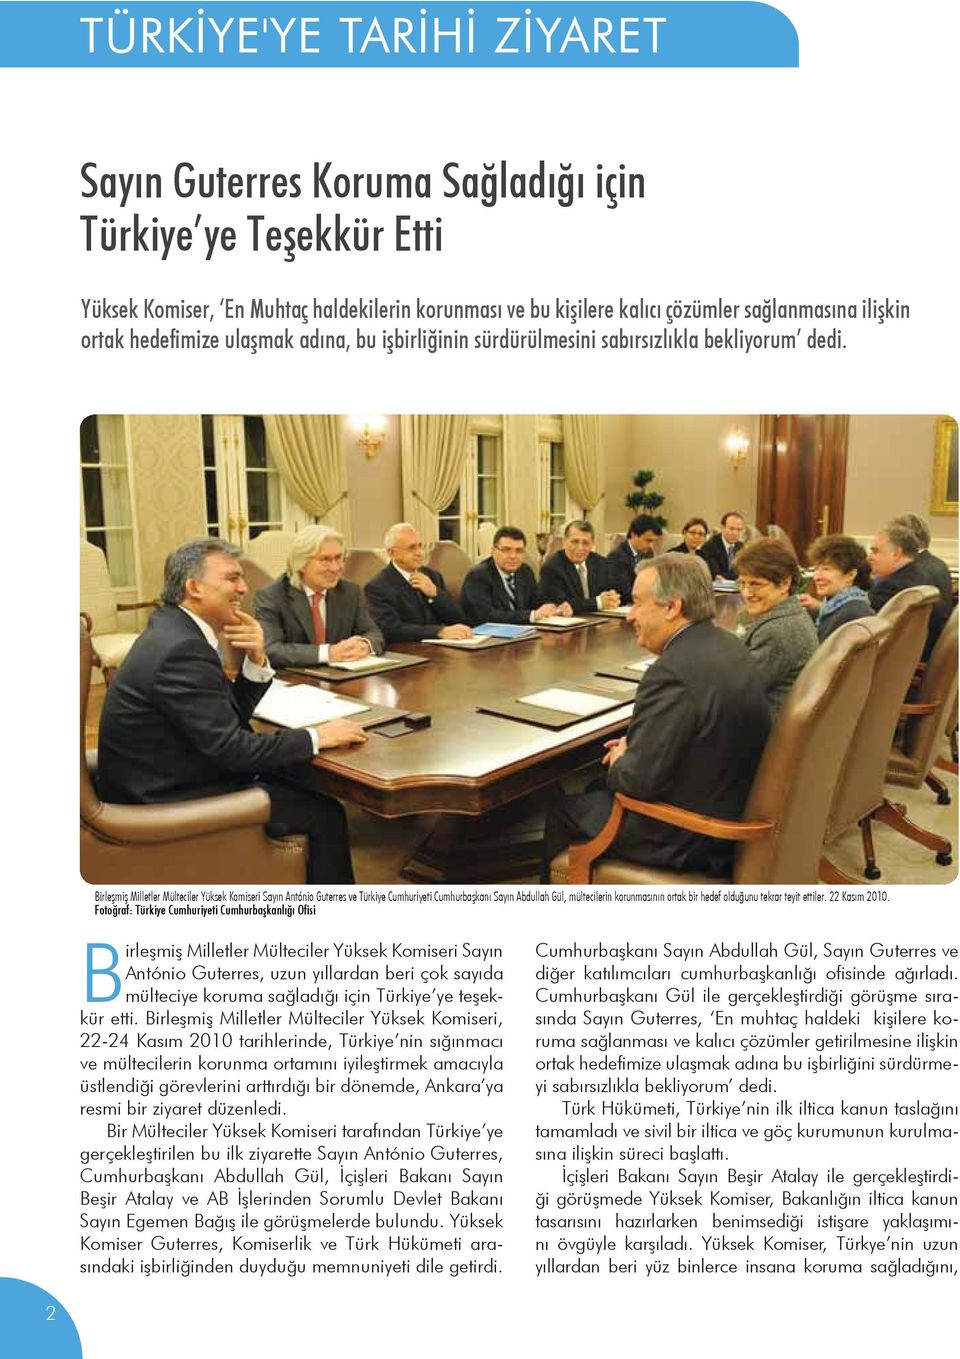 Birleşmiş Milletler Mülteciler Yüksek Komiseri Sayın António Guterres ve Türkiye Cumhuriyeti Cumhurbaşkanı Sayın Abdullah Gül, mültecilerin korunmasının ortak bir hedef olduğunu tekrar teyit ettiler.